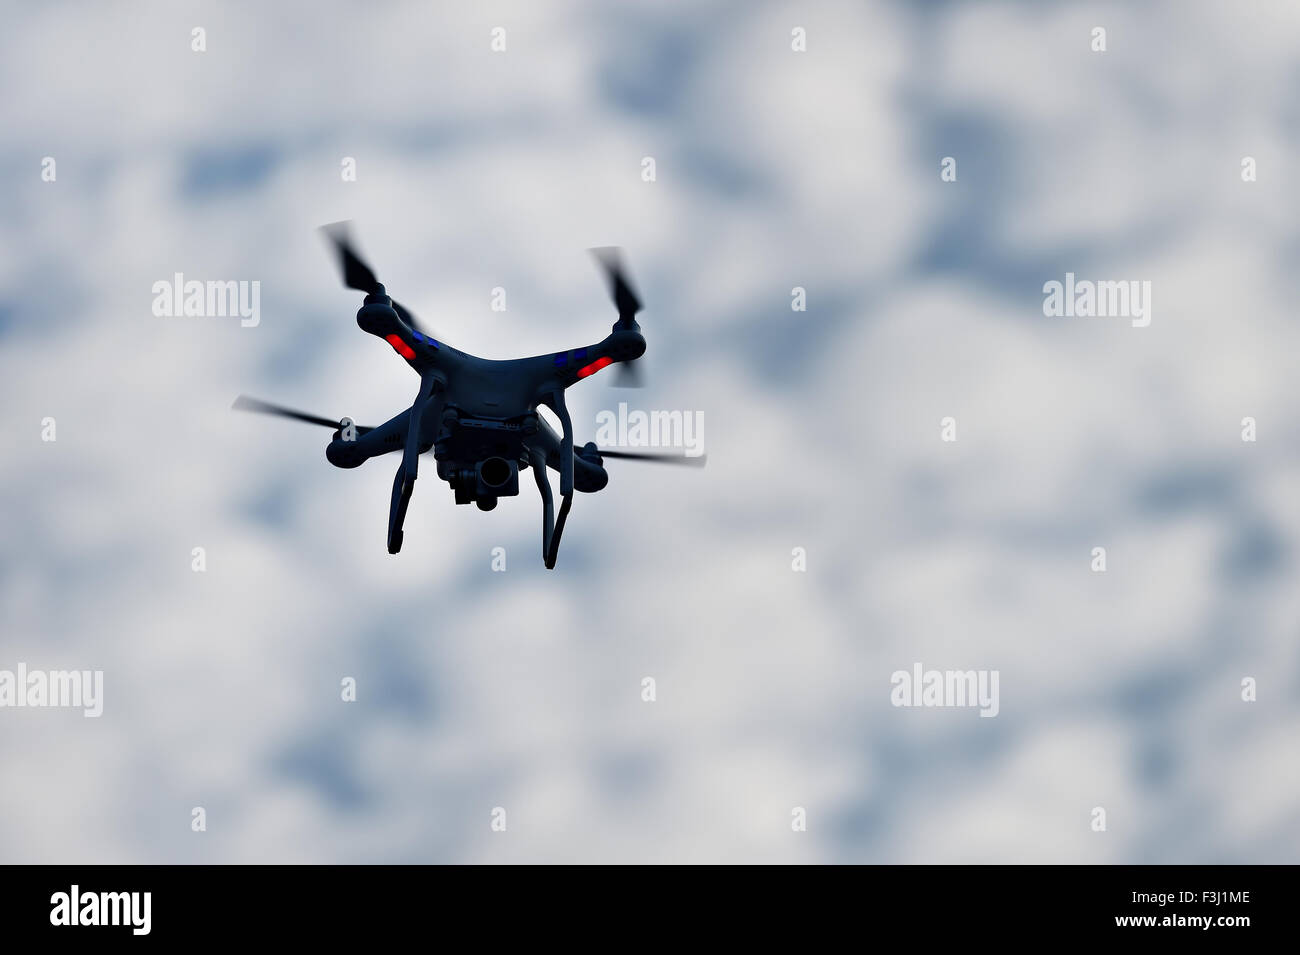 Tournage aérien drone en action, silhouetté contre blue cloudy sky Banque D'Images